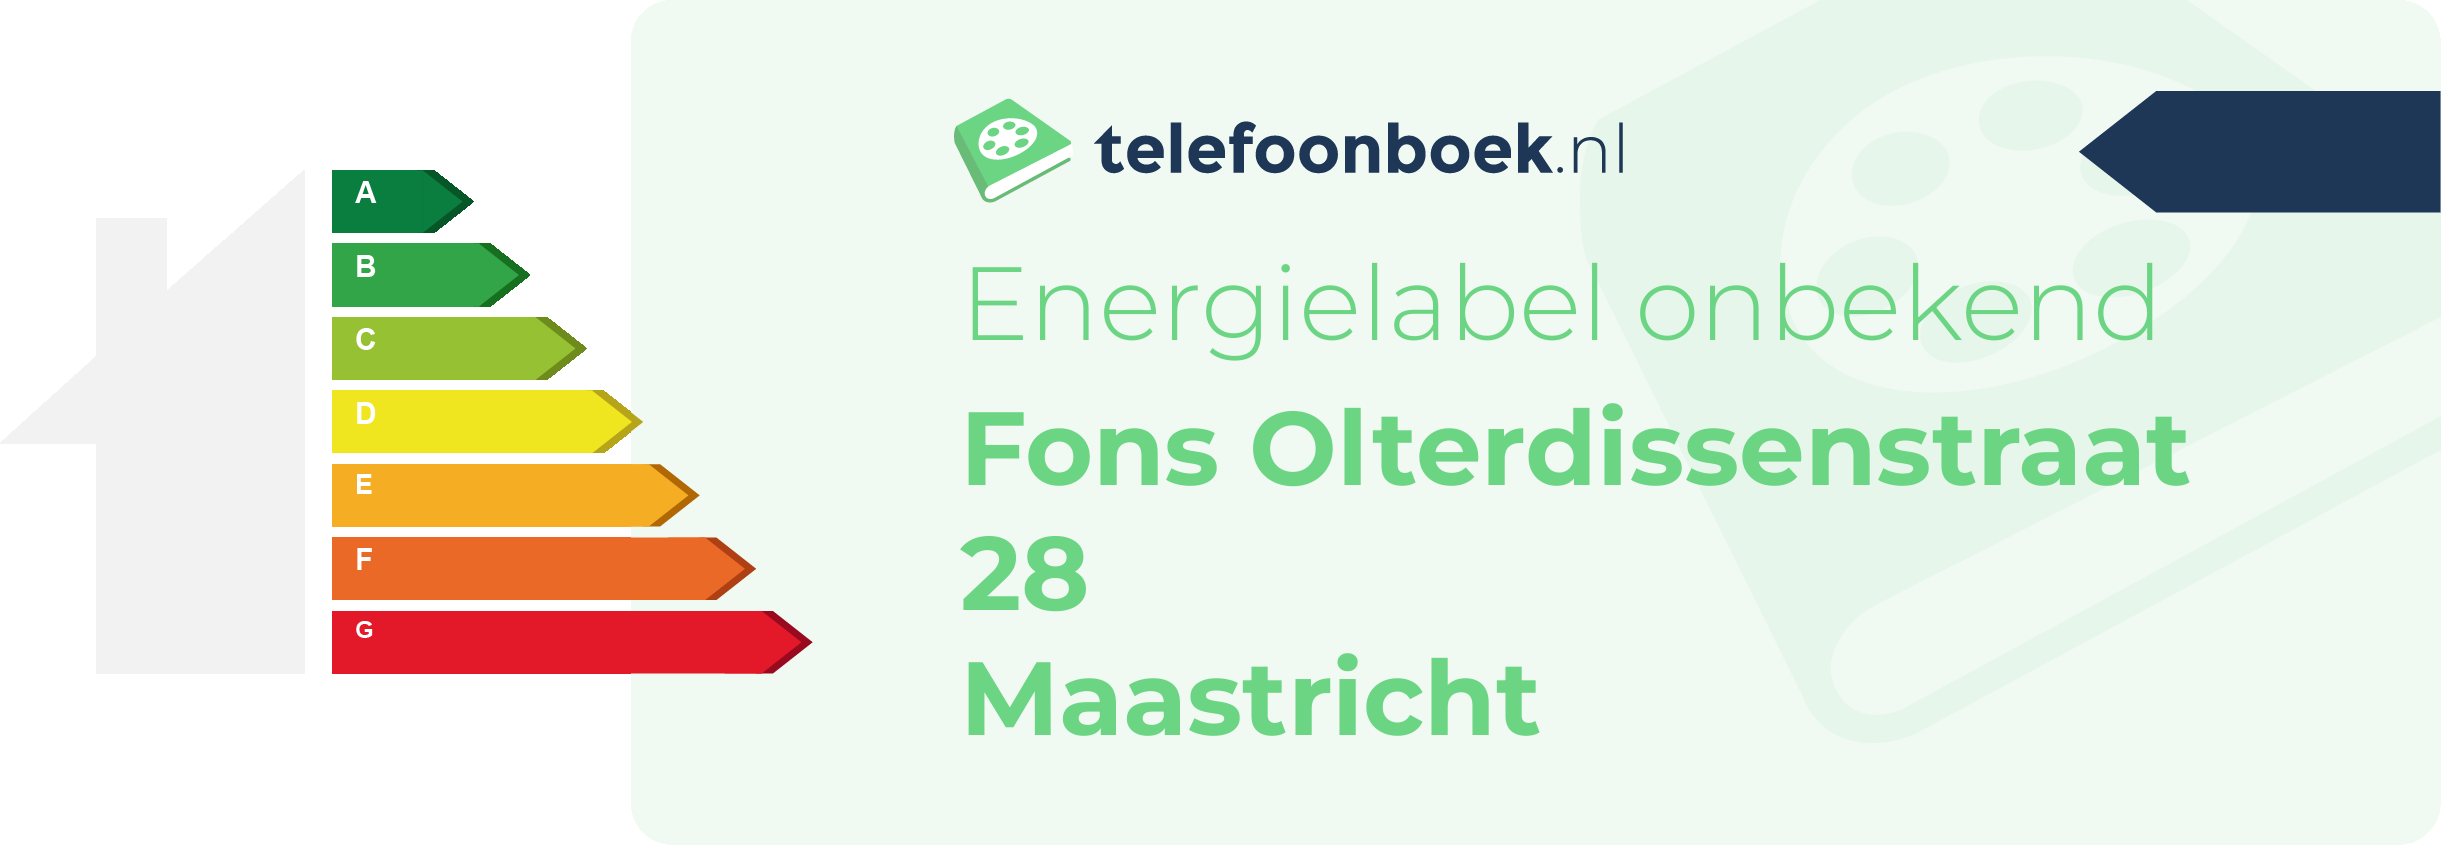 Energielabel Fons Olterdissenstraat 28 Maastricht